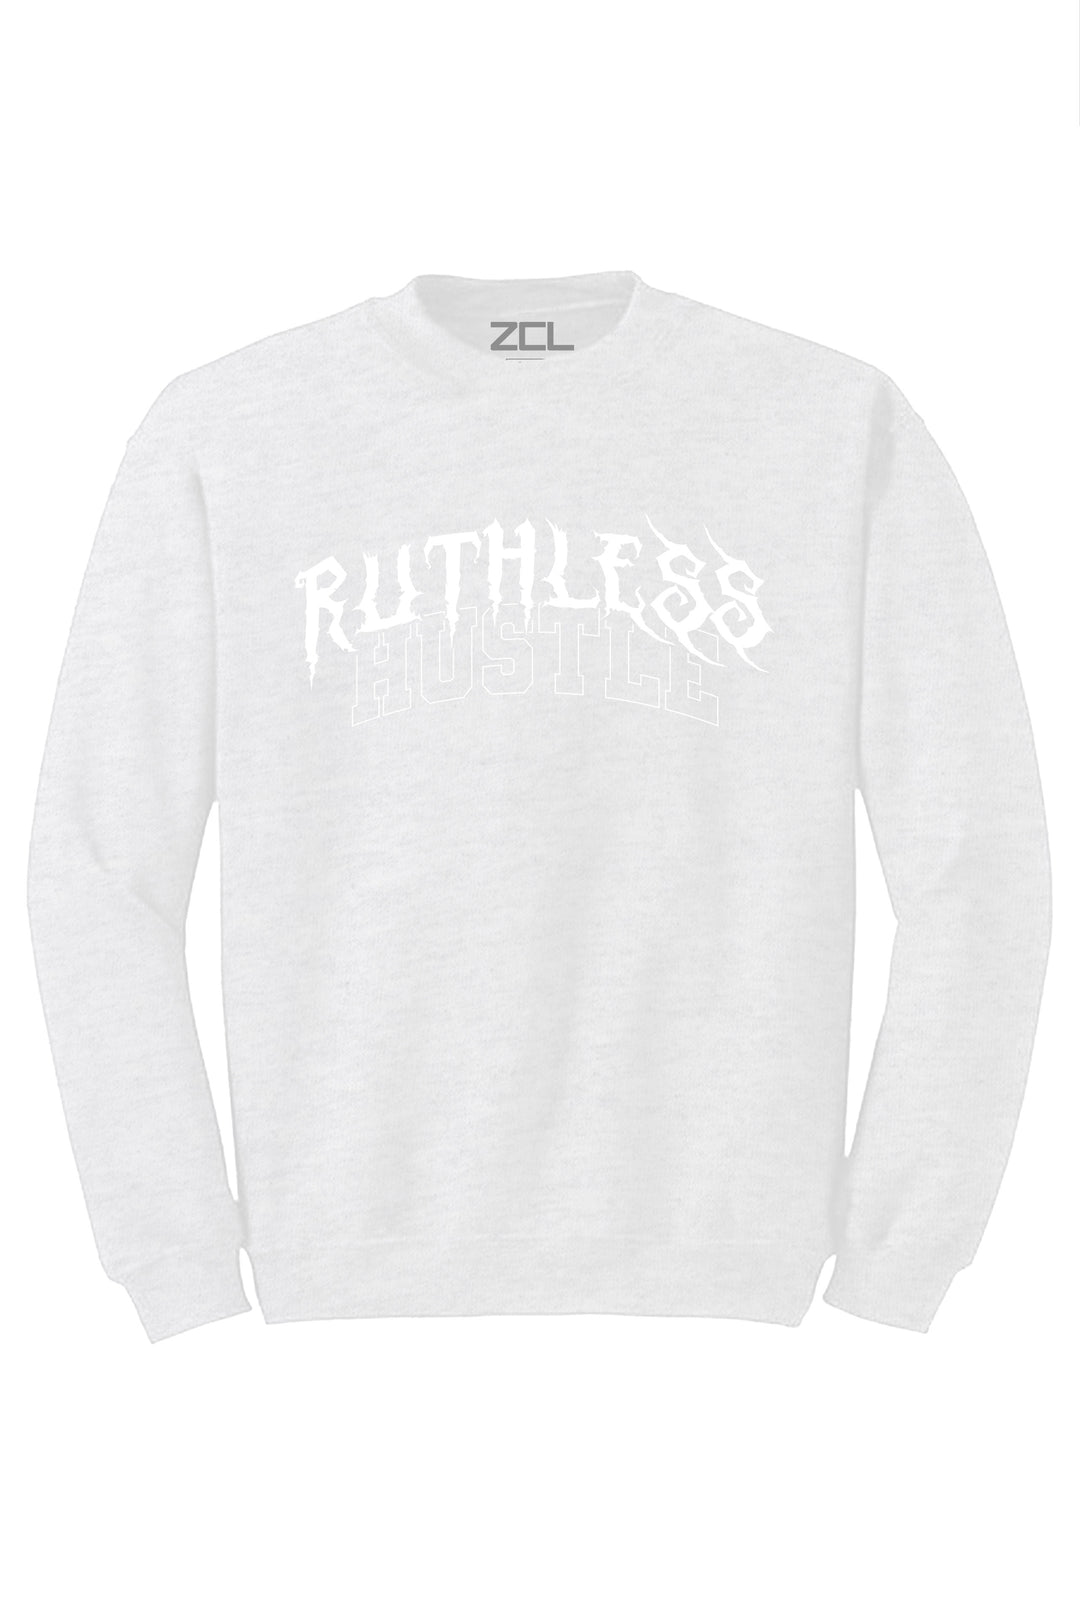 Ruthless Hustle Crewneck Sweatshirt (White Logo) - Zamage